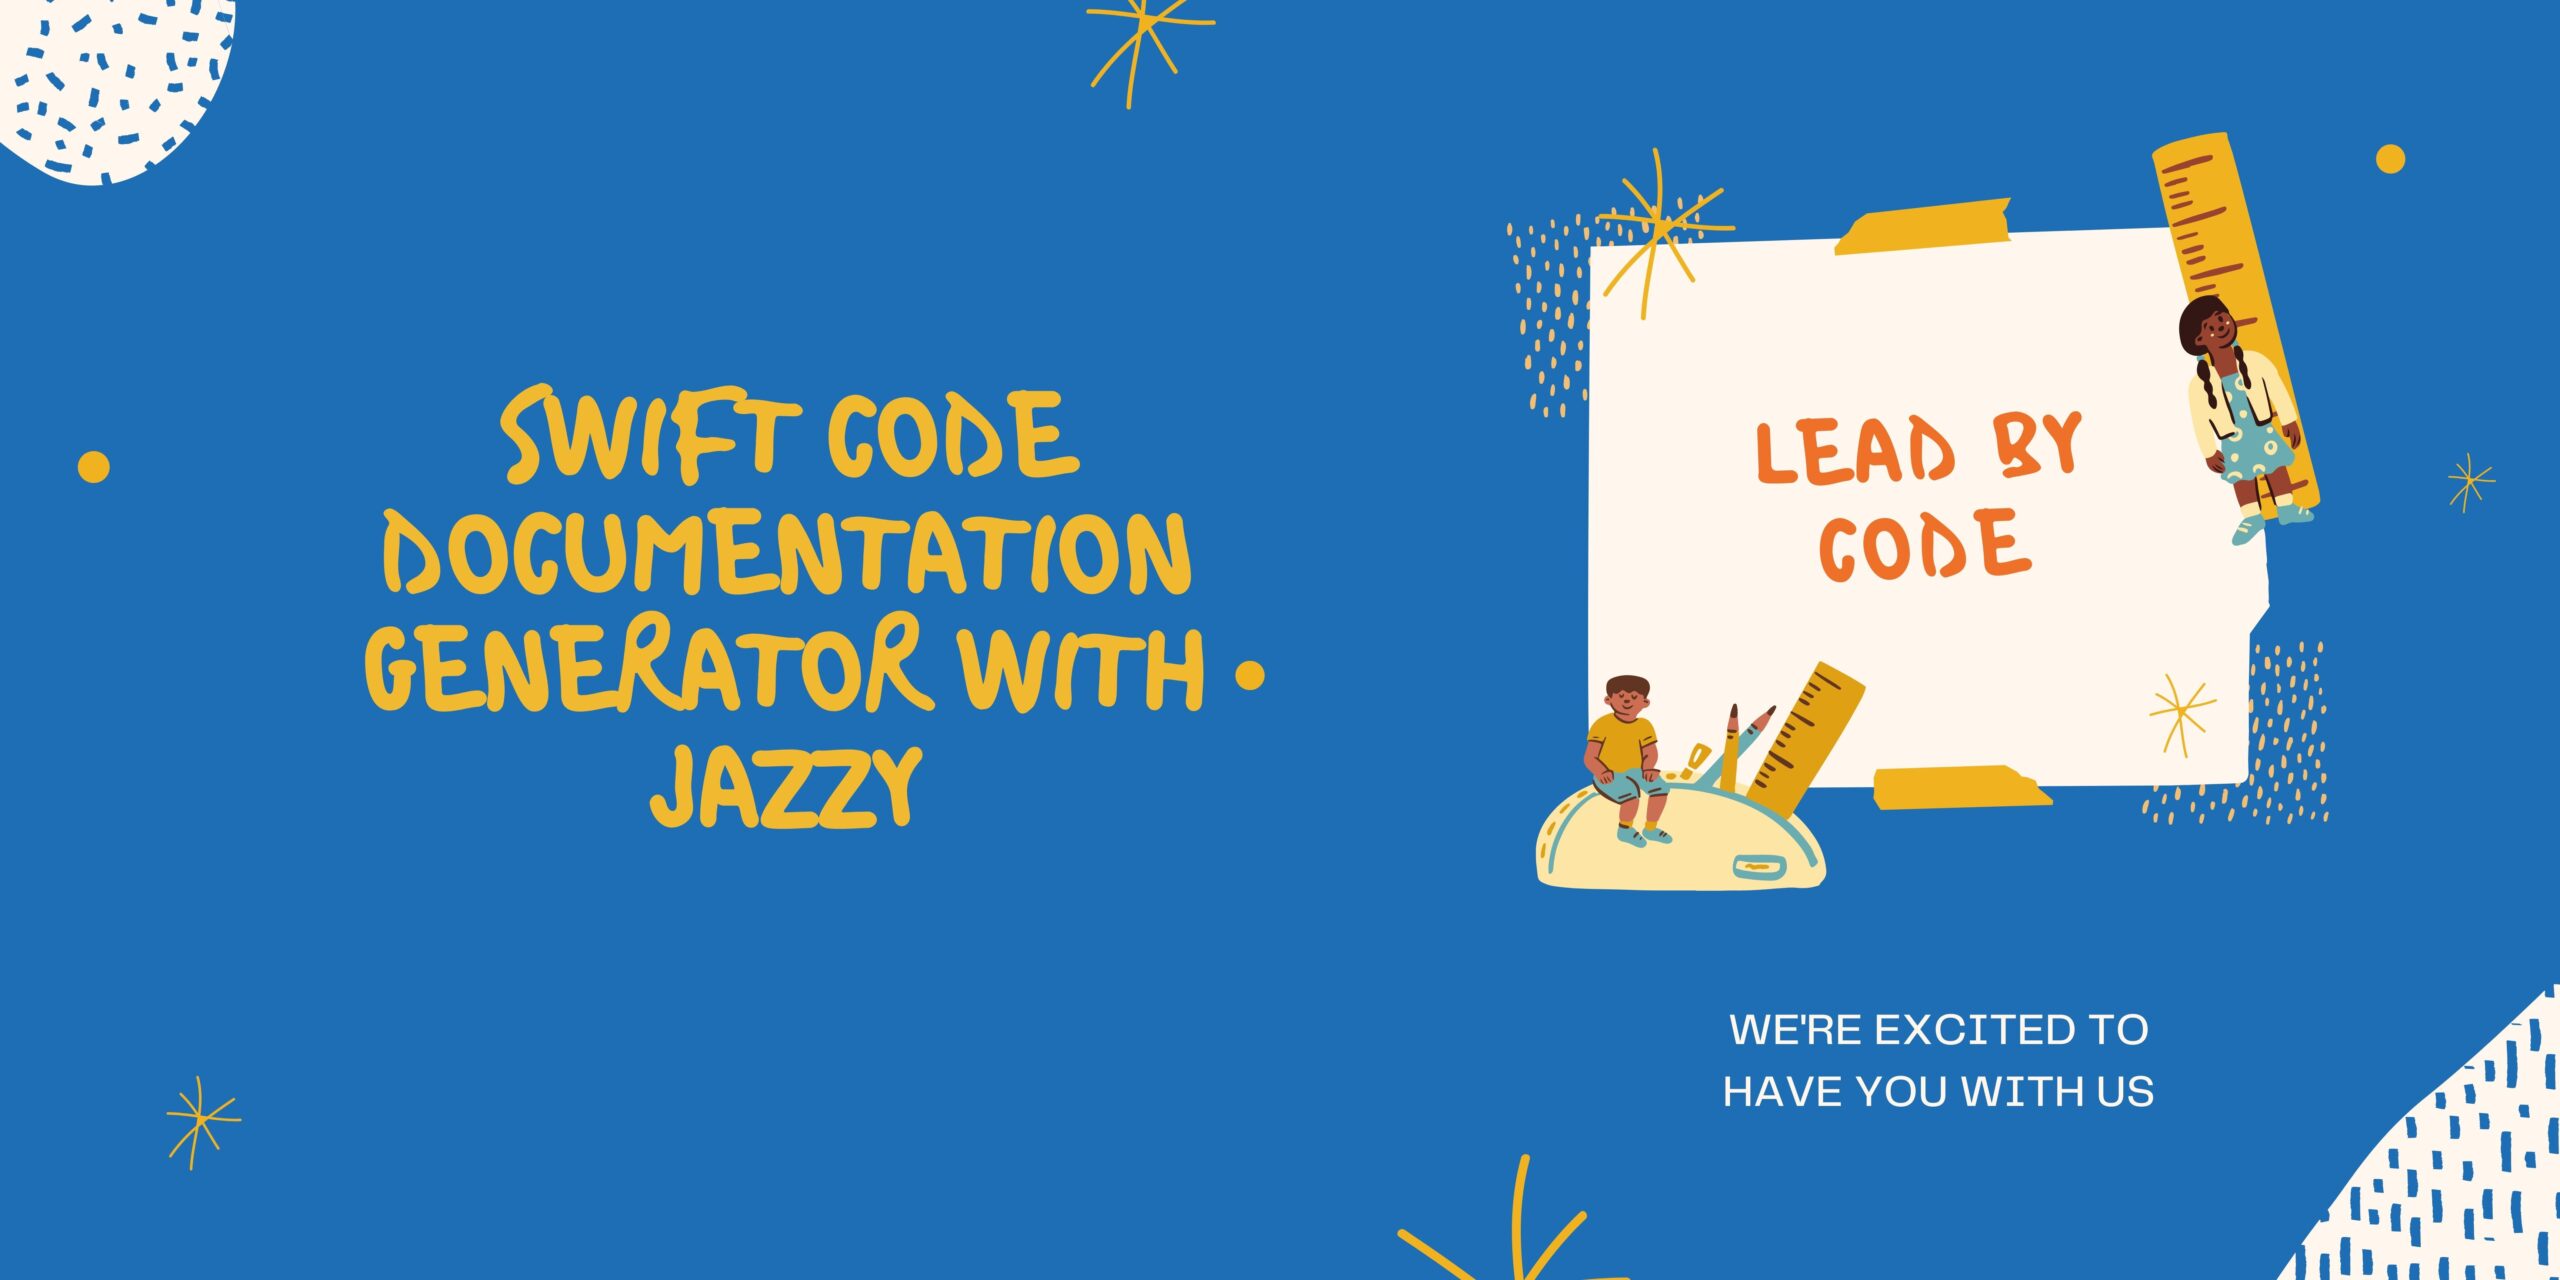 Swift code documentation generator with Jazzy